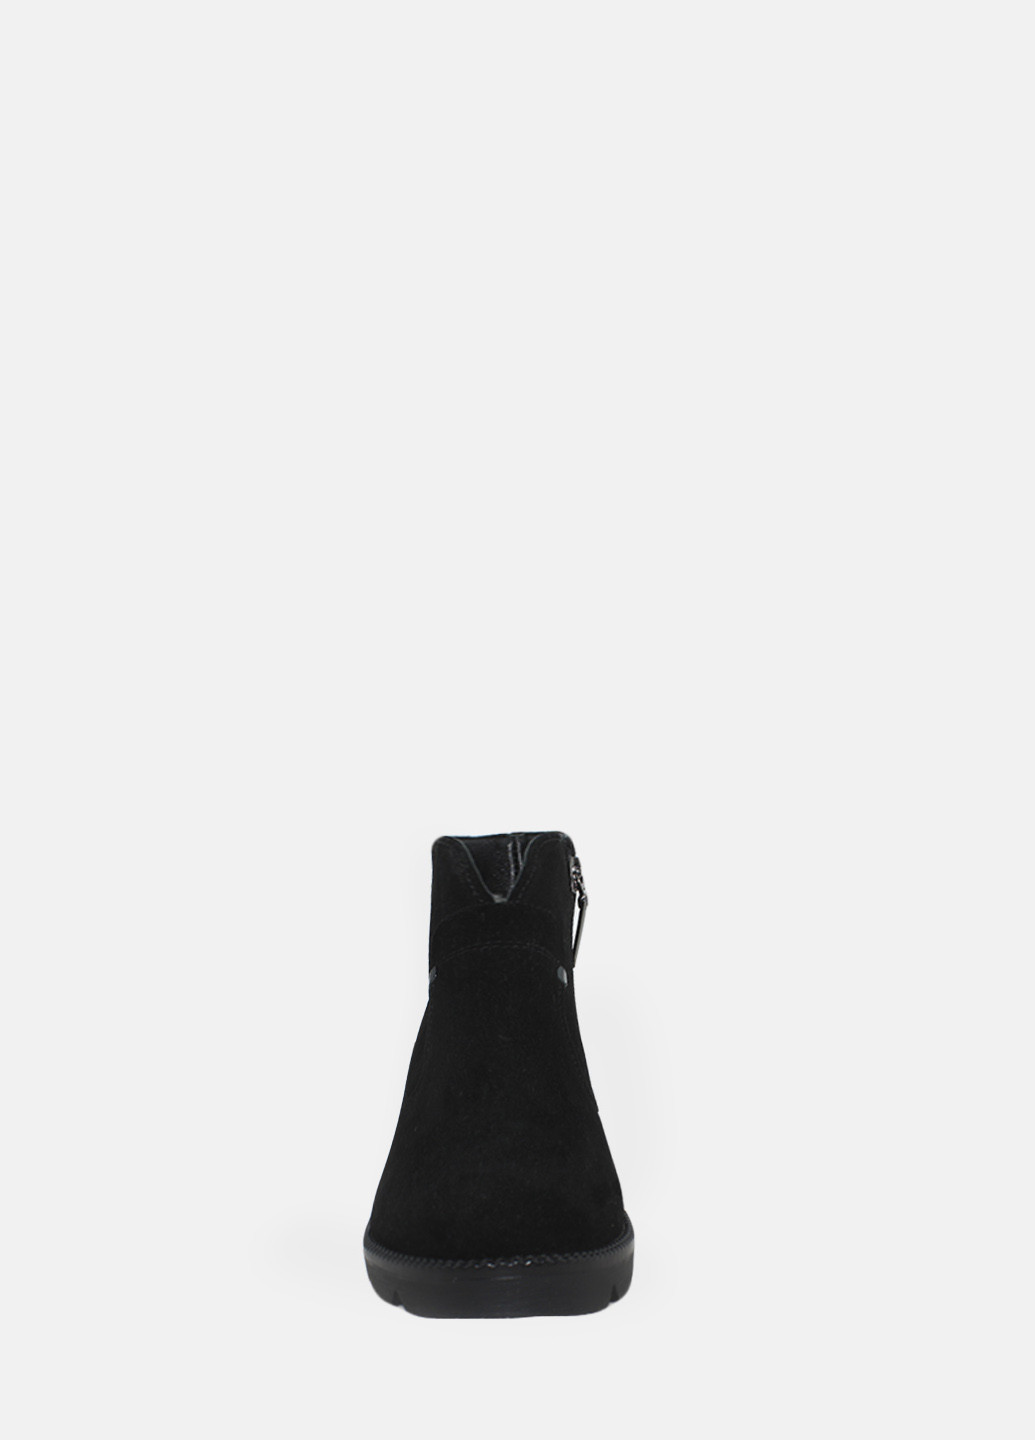 Зимние ботинки rp1712-11 черный Passati из натуральной замши